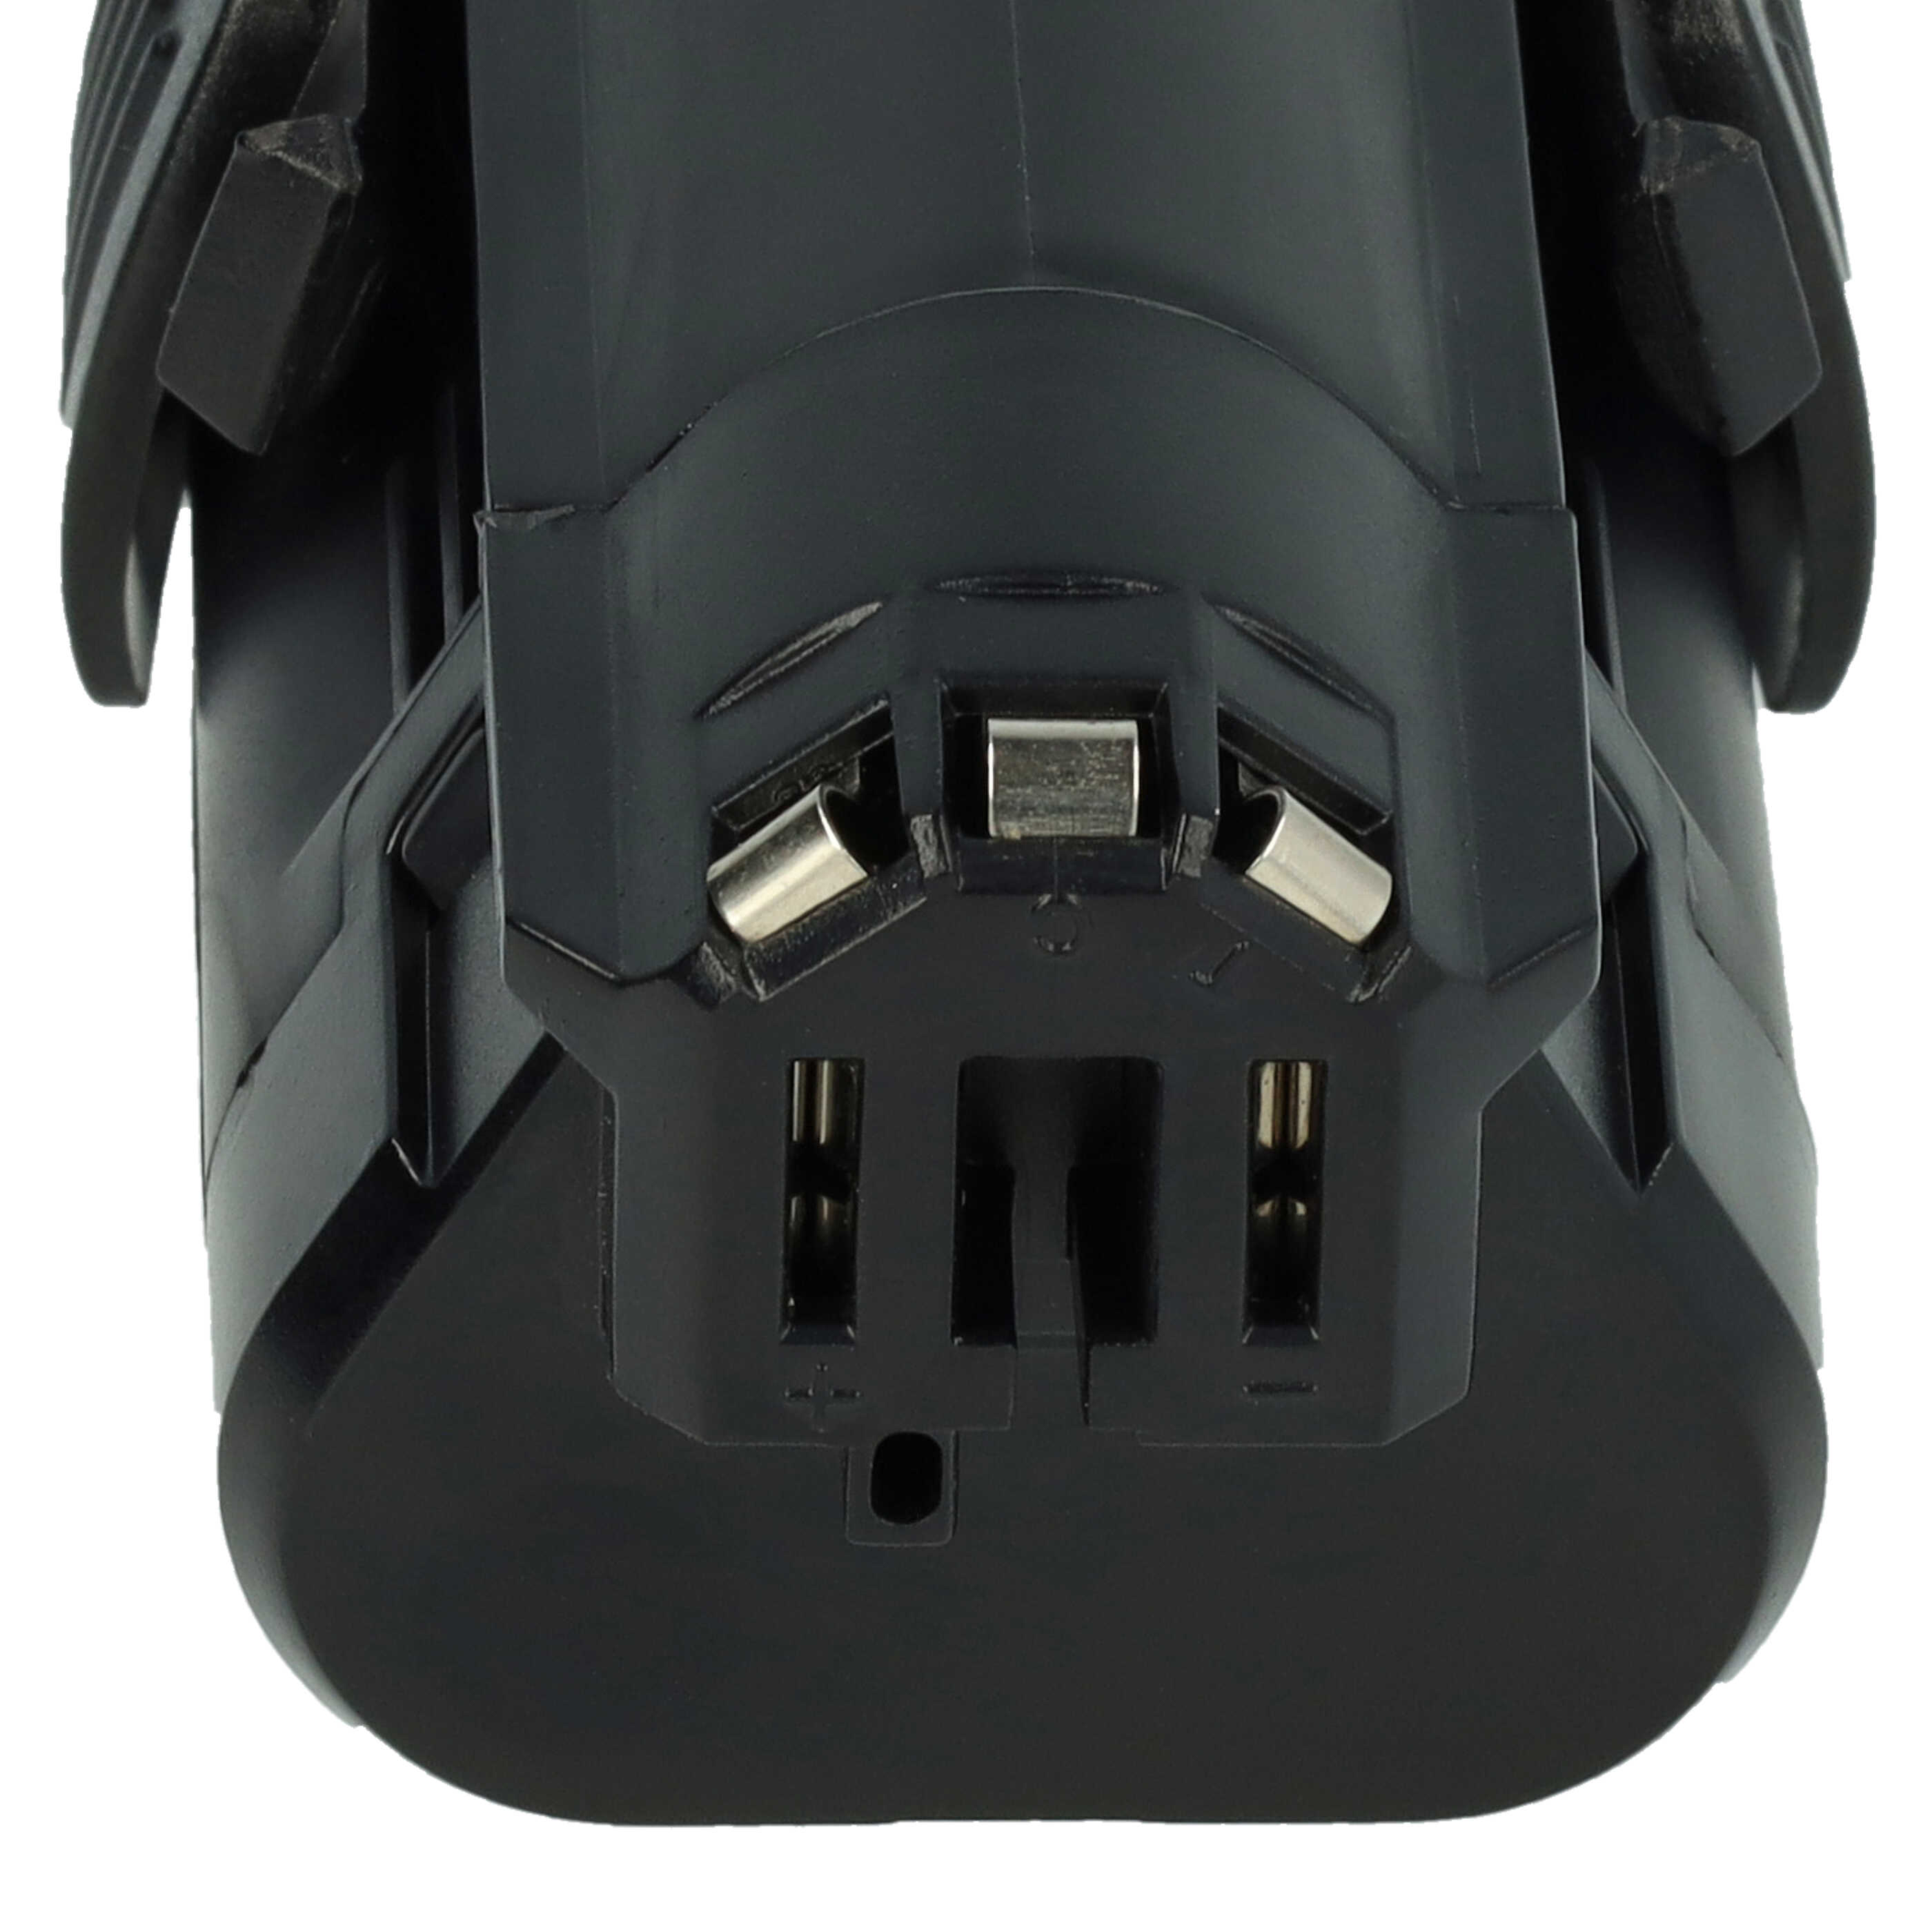 Akku 10,8V passend für Bosch PSR 10.8 Li-2, Dremel 875, 8200, 8220, 8300 - 2000mAh, Li-Ion